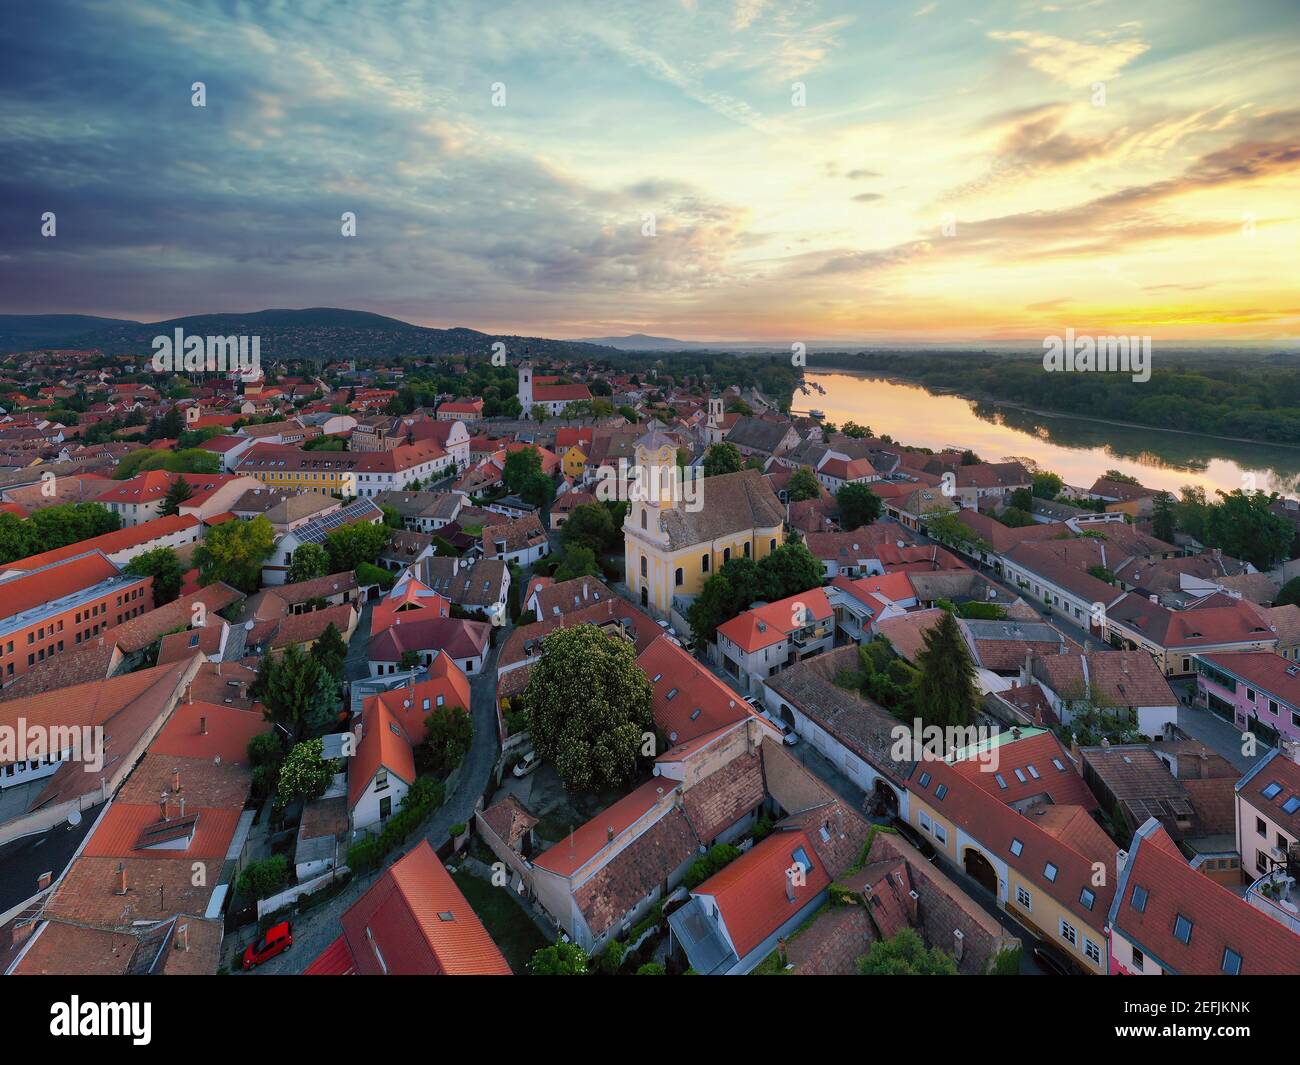 Luftbild über die Stadt Szentendre. Erstaunliche romantische kleine Stadt in der Nähe von Budapest Ungarn. Berühmtes touristisches Ziel. Stockfoto